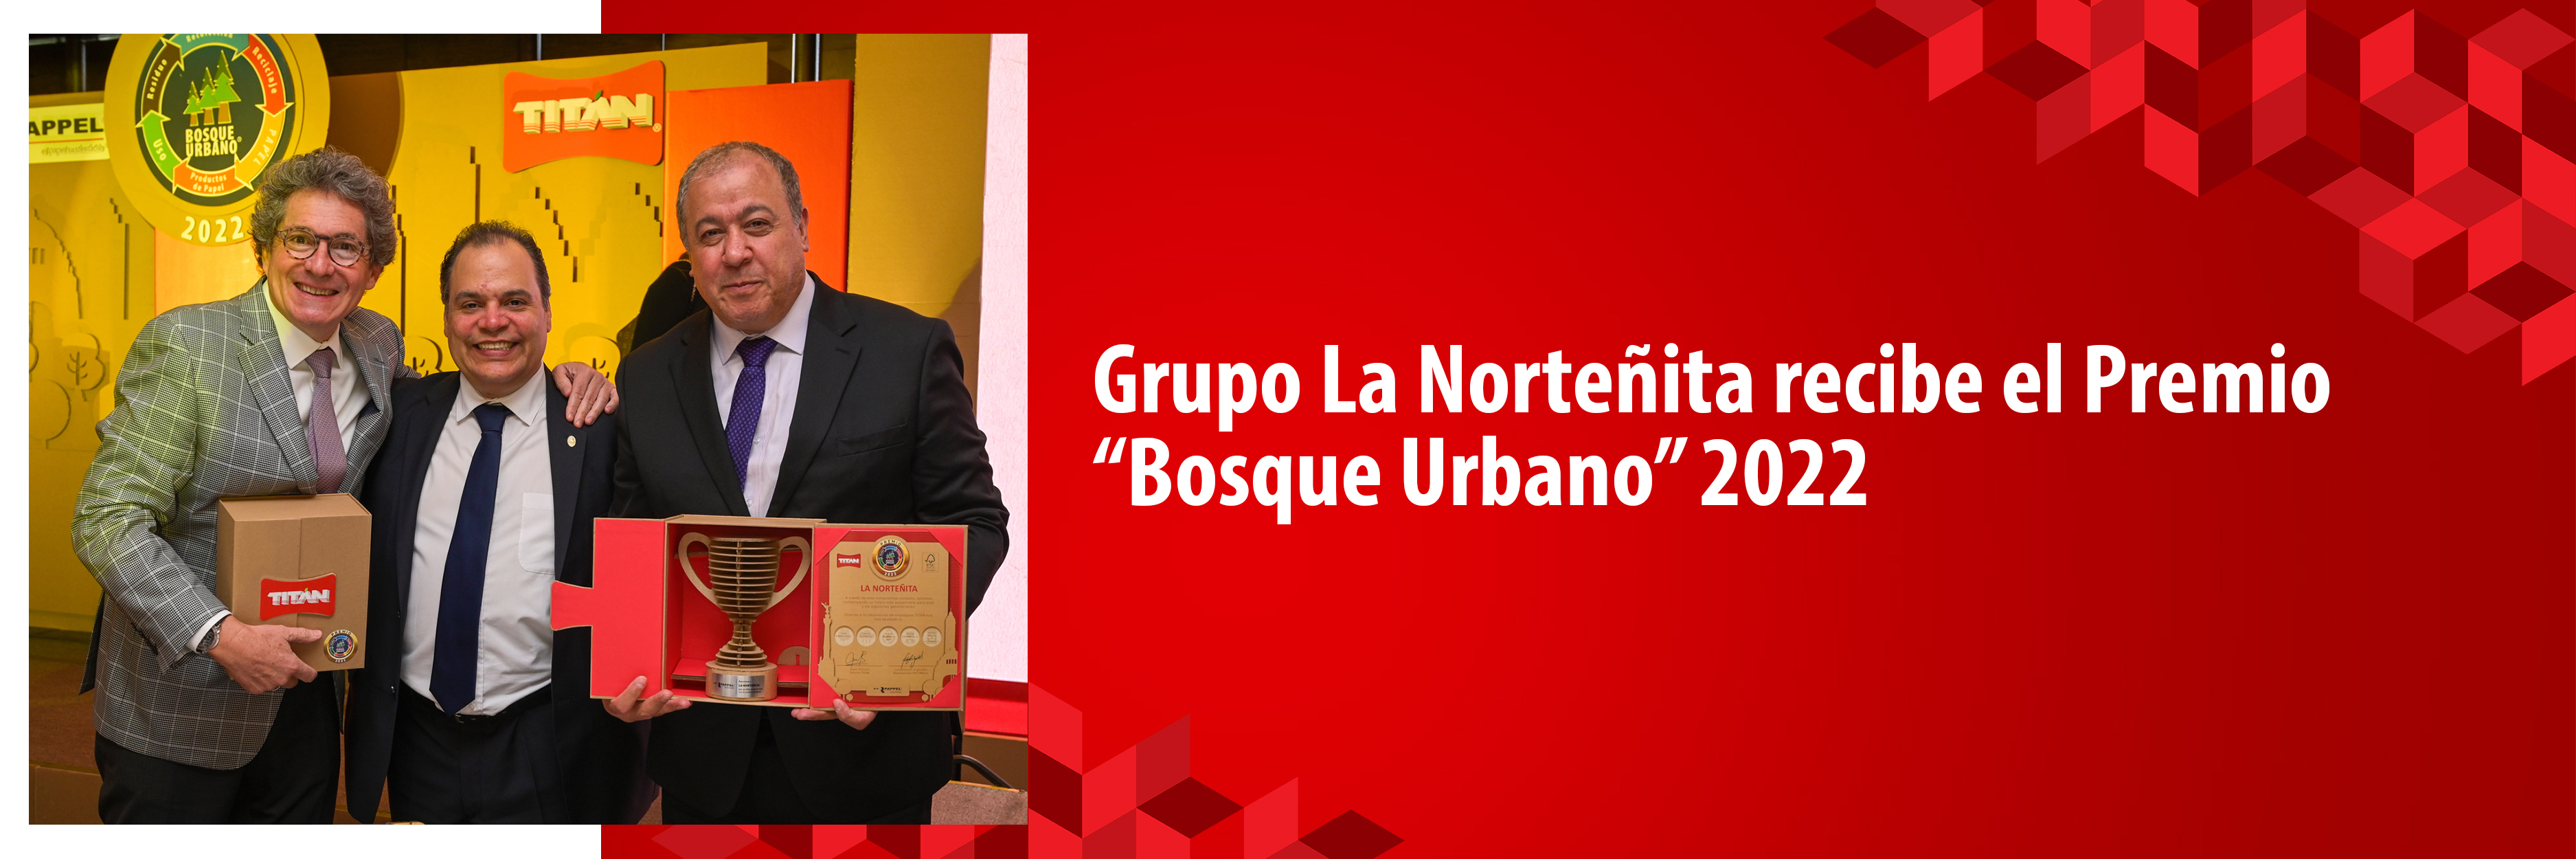 Grupo La Norteñita recibe el Premio  “Bosque Urbano” 2022 